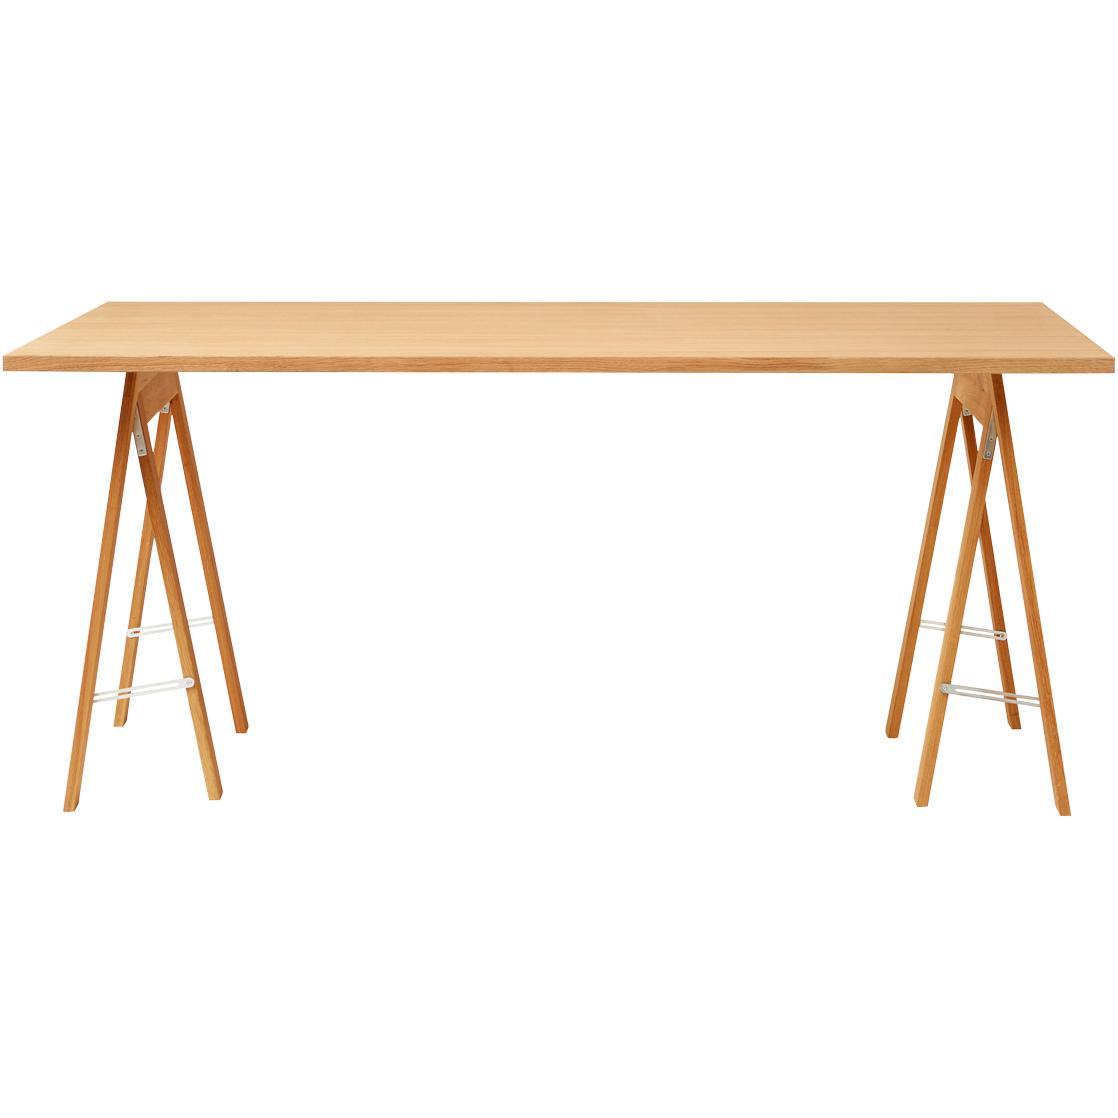 形式和完善的线性桌165x88厘米。橡木